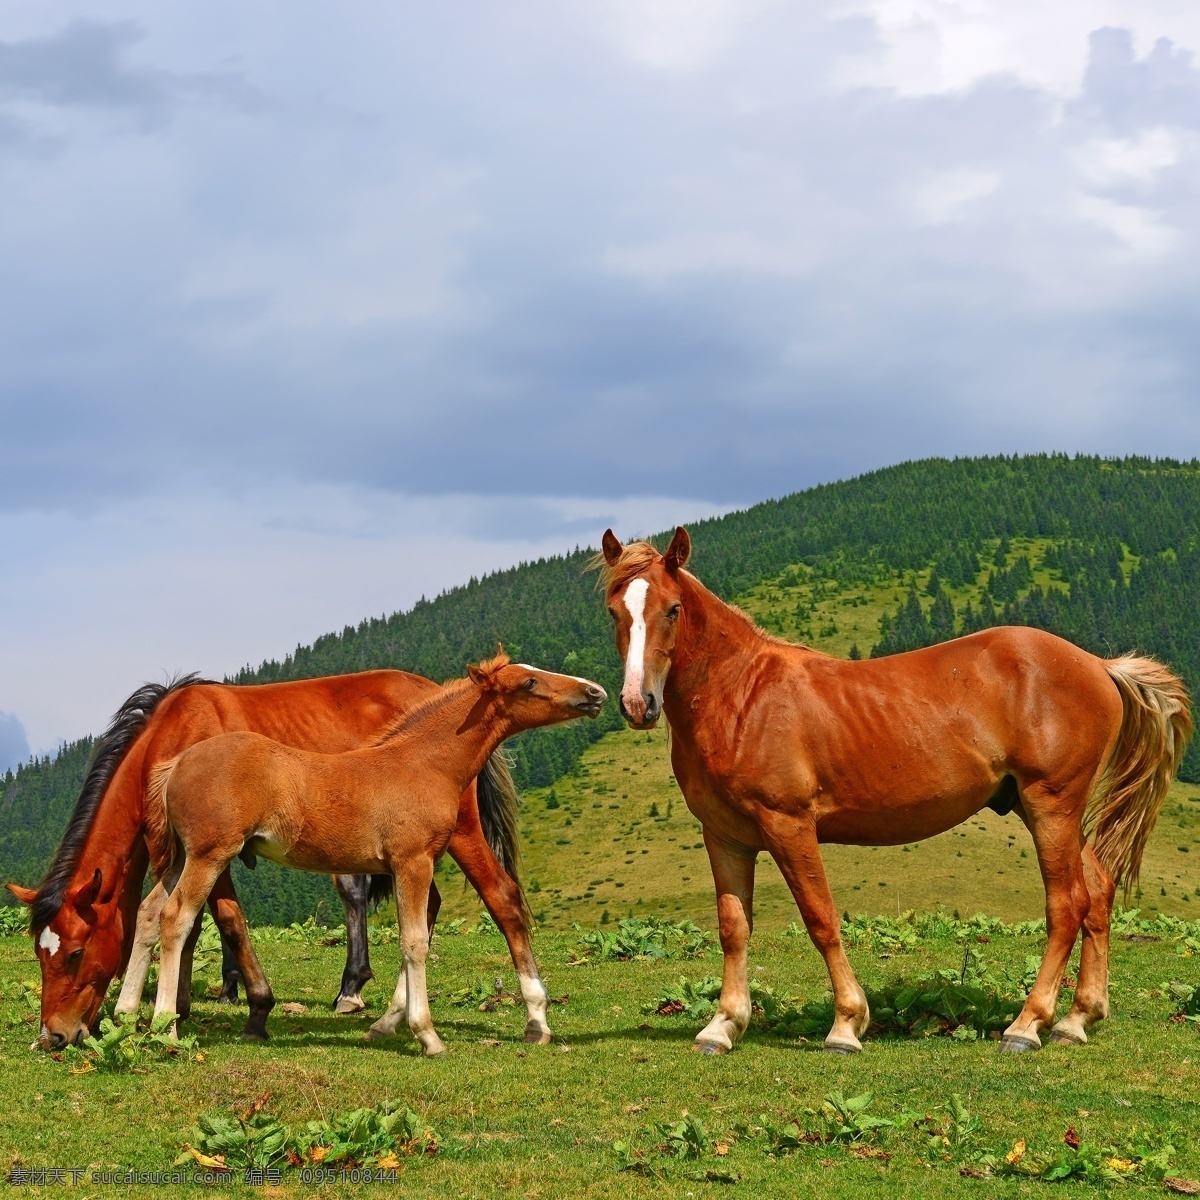 草地 上 健壮 马匹 健壮的马匹 动物 棕色马 高山 陆地动物 生物世界